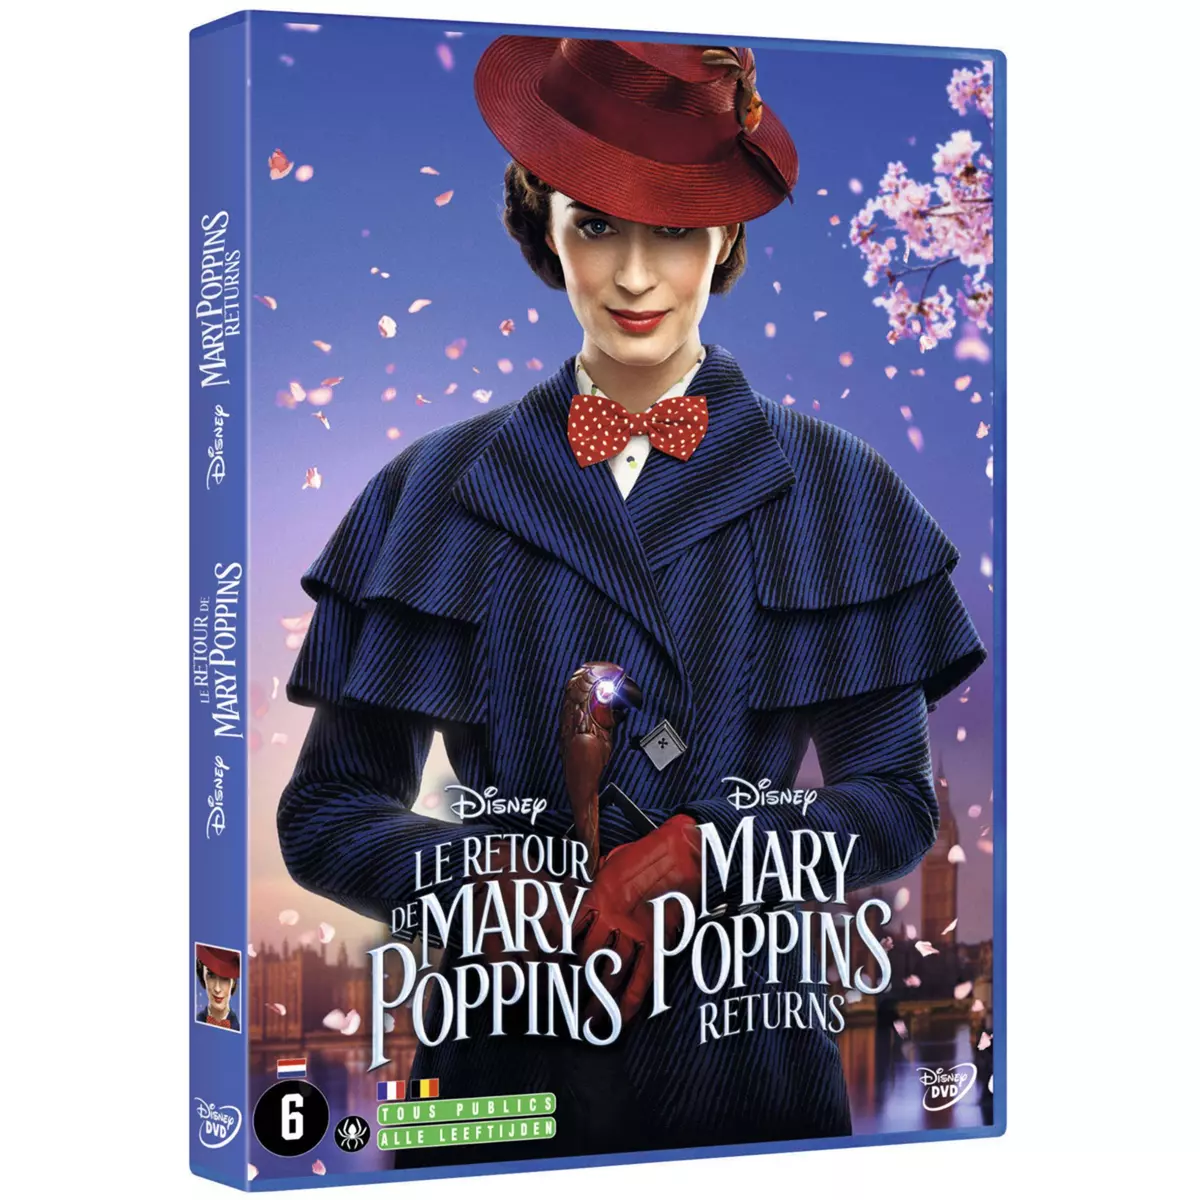 Le Retour de Mary Poppins DVD